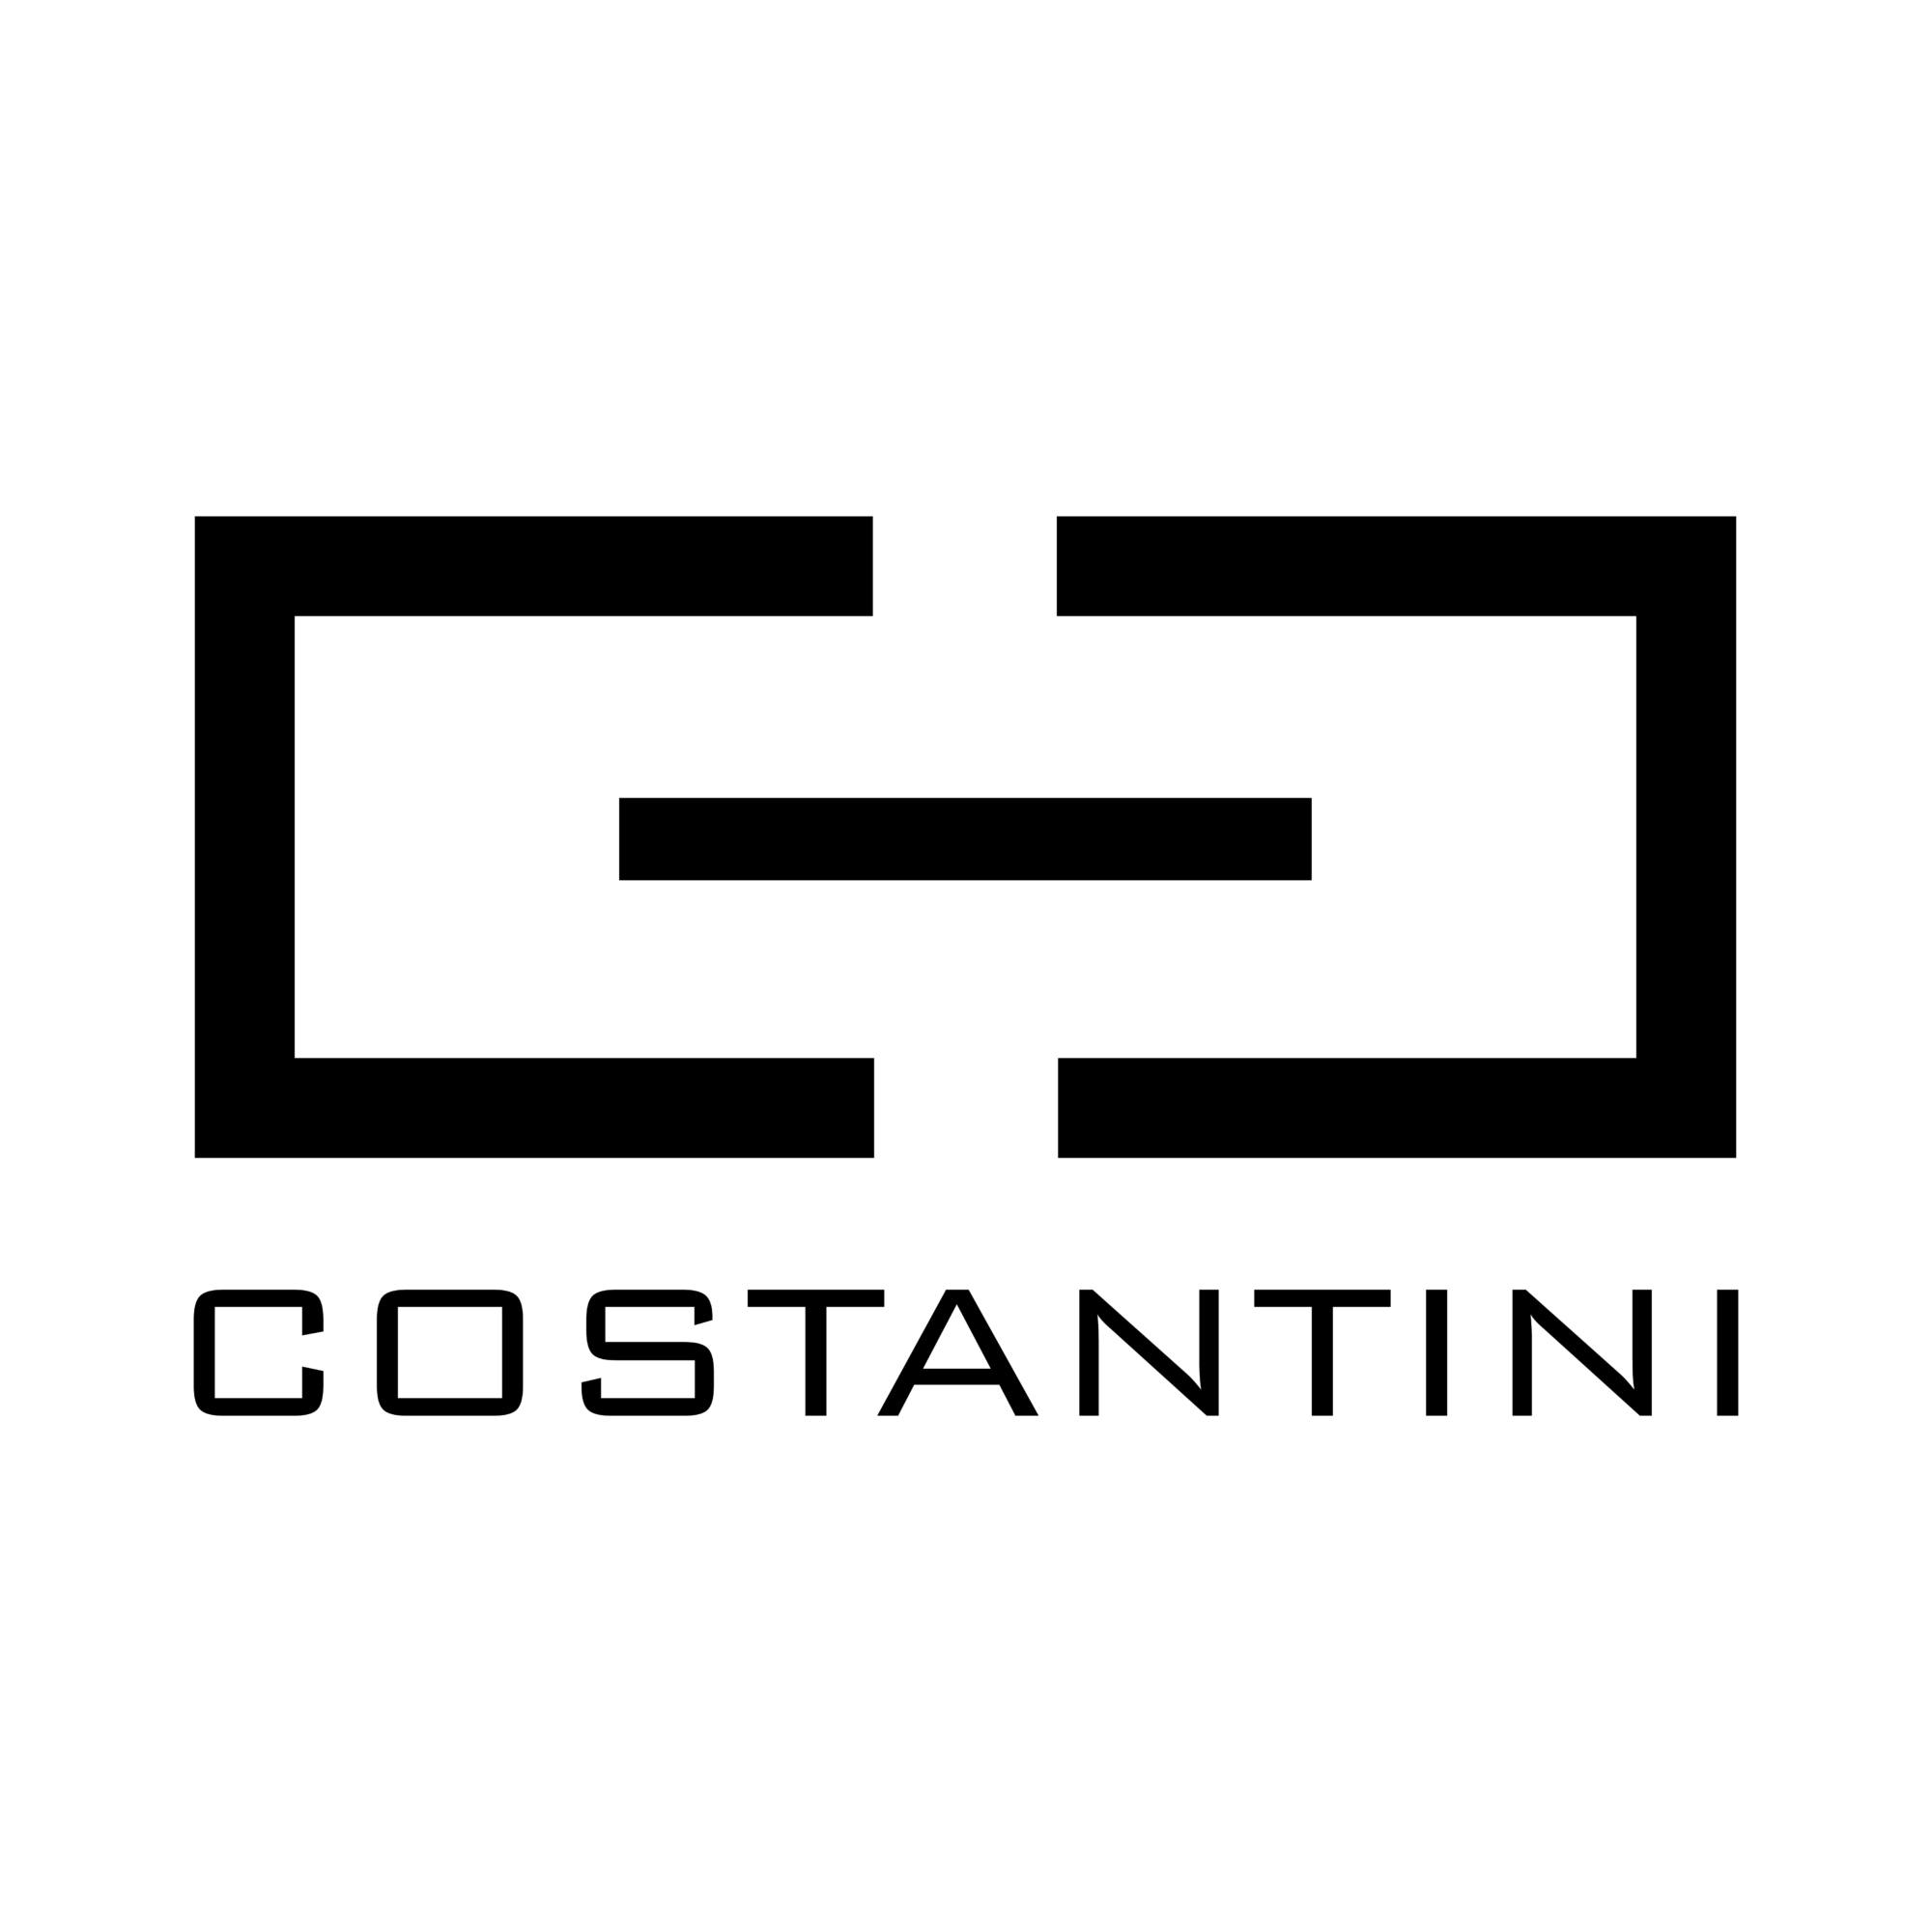 Costantini - MondaniWeb